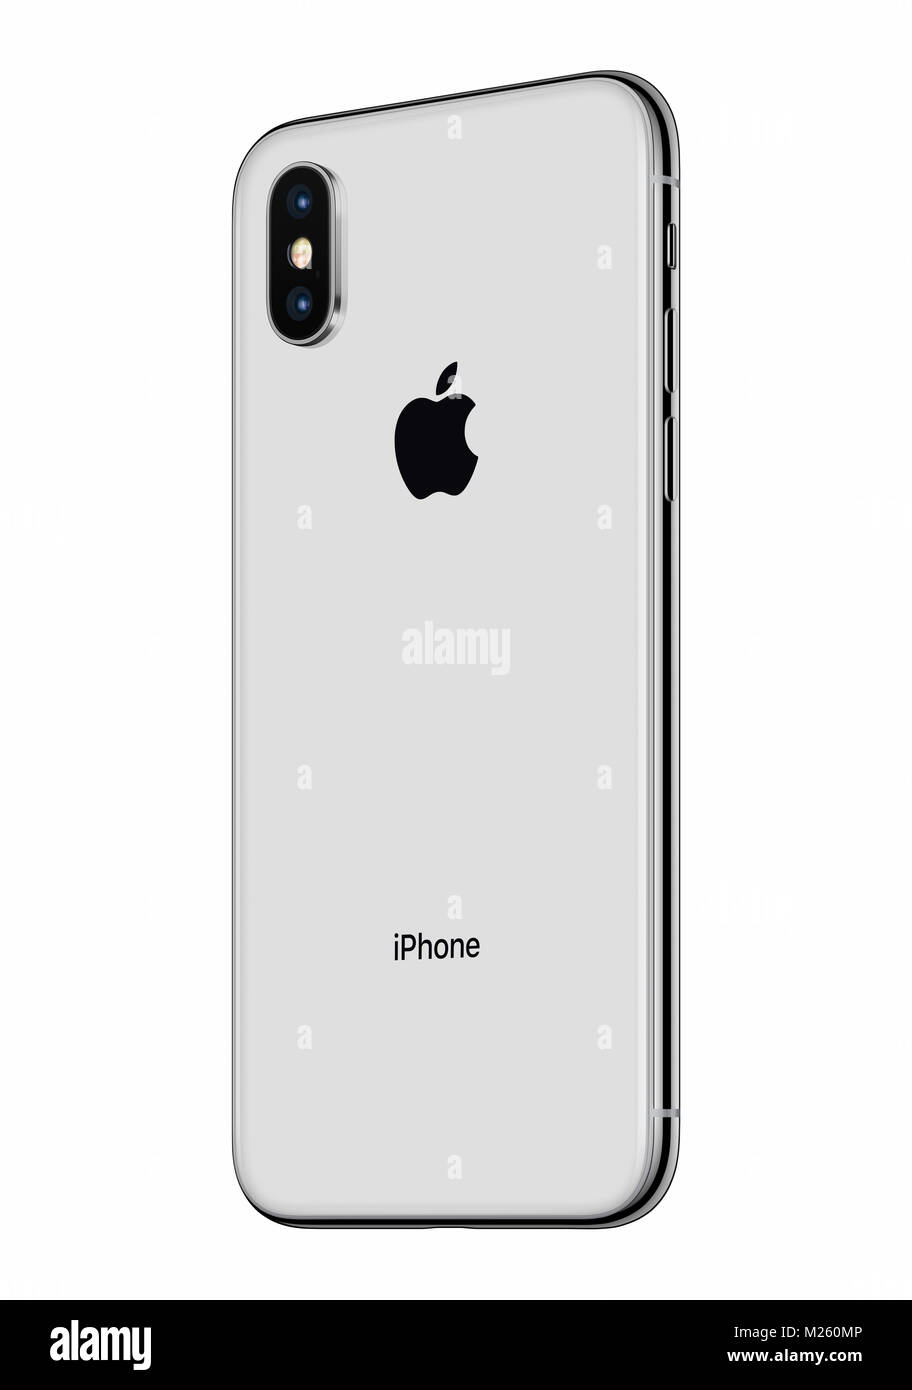 Silber Apple iphone x Rückseite leicht gedreht isoliert auf weißem  Hintergrund. iPhone 10 ist das neueste Smartphone von Apple Inc mit  rahmenlosen Design Stockfotografie - Alamy